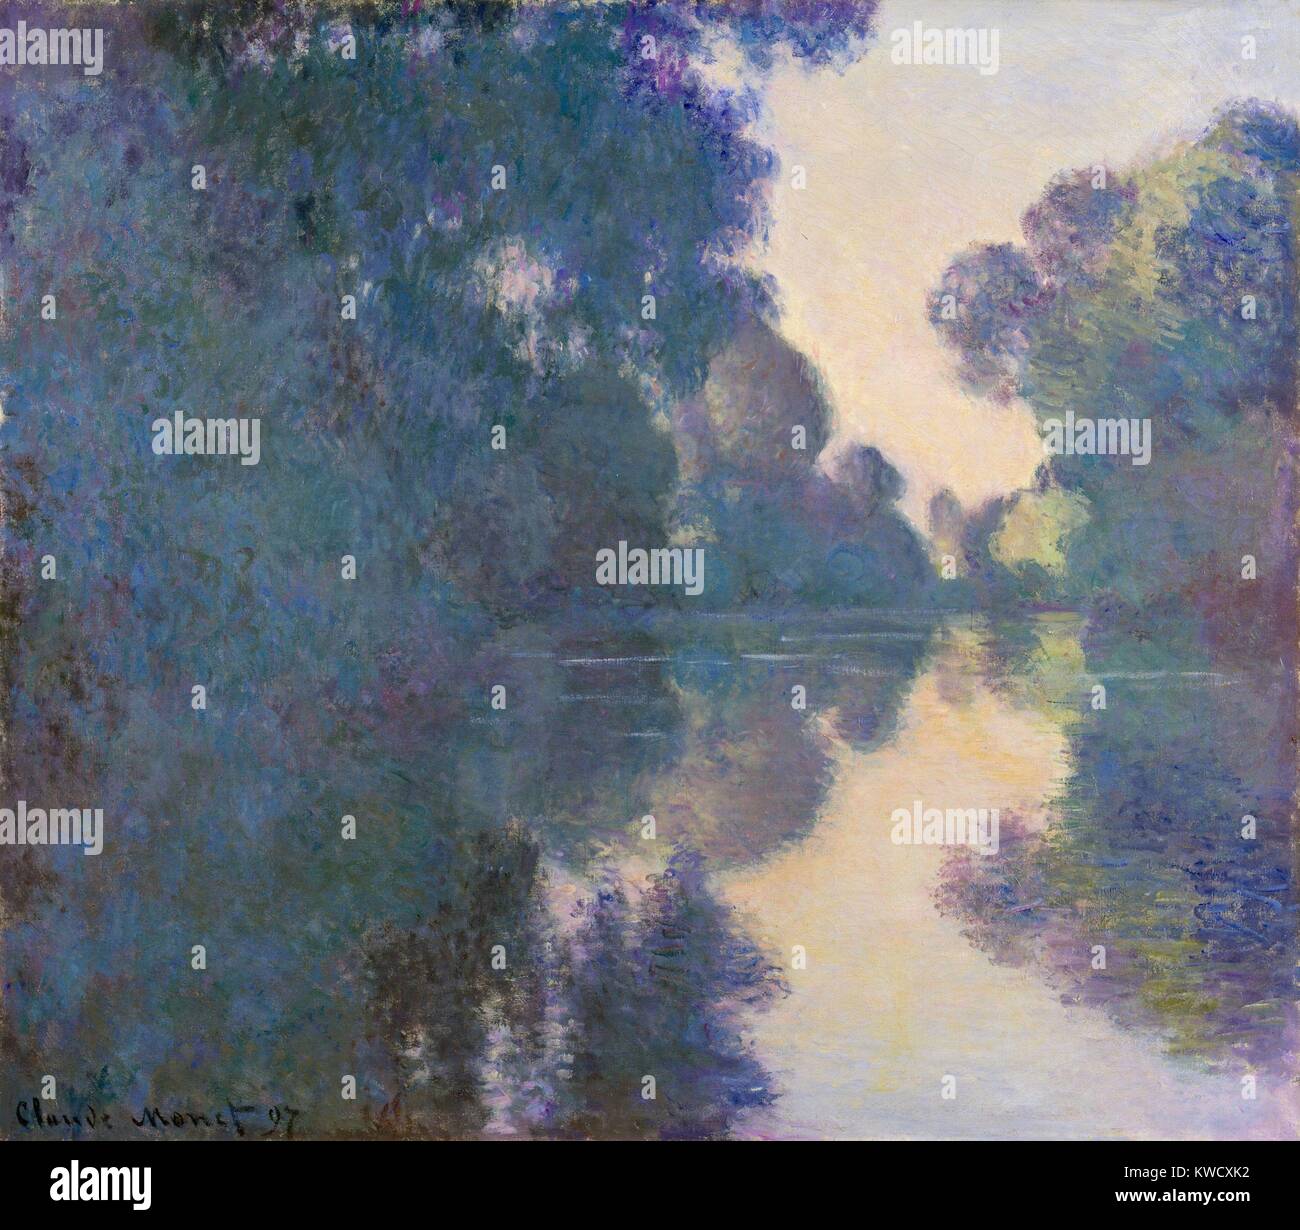 Morgen auf der Seine in der Nähe von Giverny, von Claude Monet, 1897, französischer Impressionisten Öl Malerei. Monet malte die Bilder dieser Serie von seinem schwimmenden Studio Boot, als er das wechselnde Licht des Sonnenaufgangs (BSLOC 2017 3 45) erfasst Stockfoto